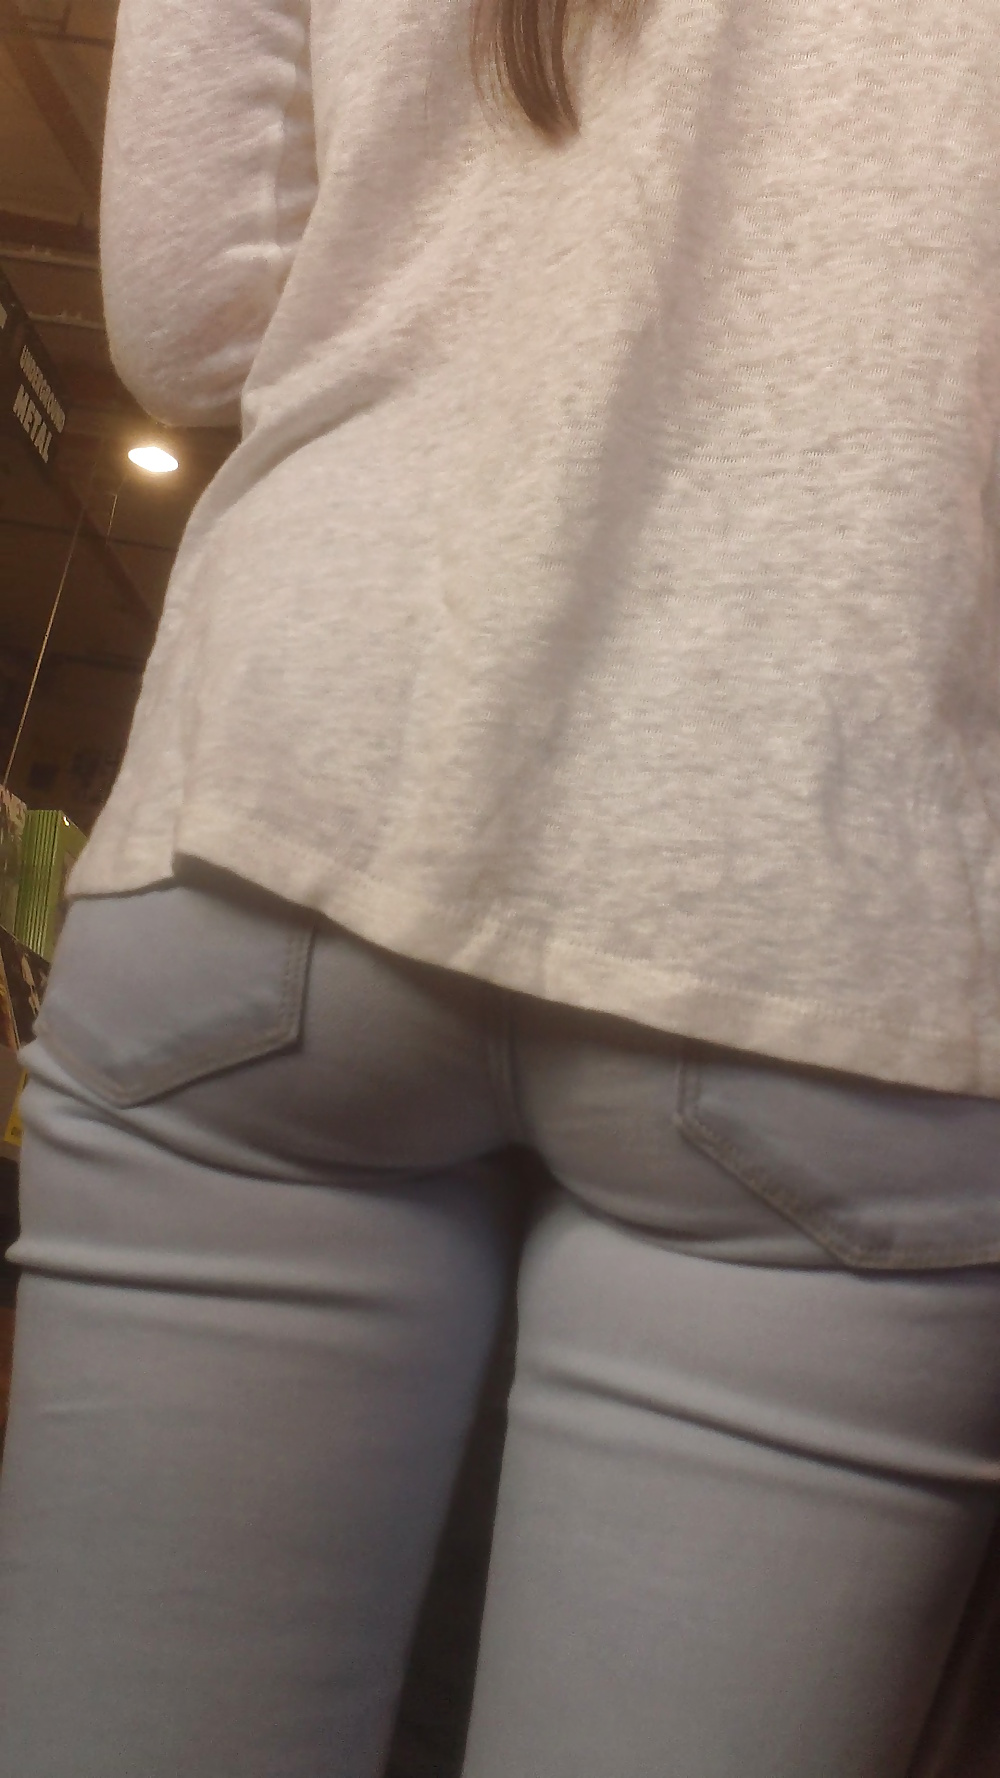 Popular teen girls ass & butt in jeans Part 7 #39948678